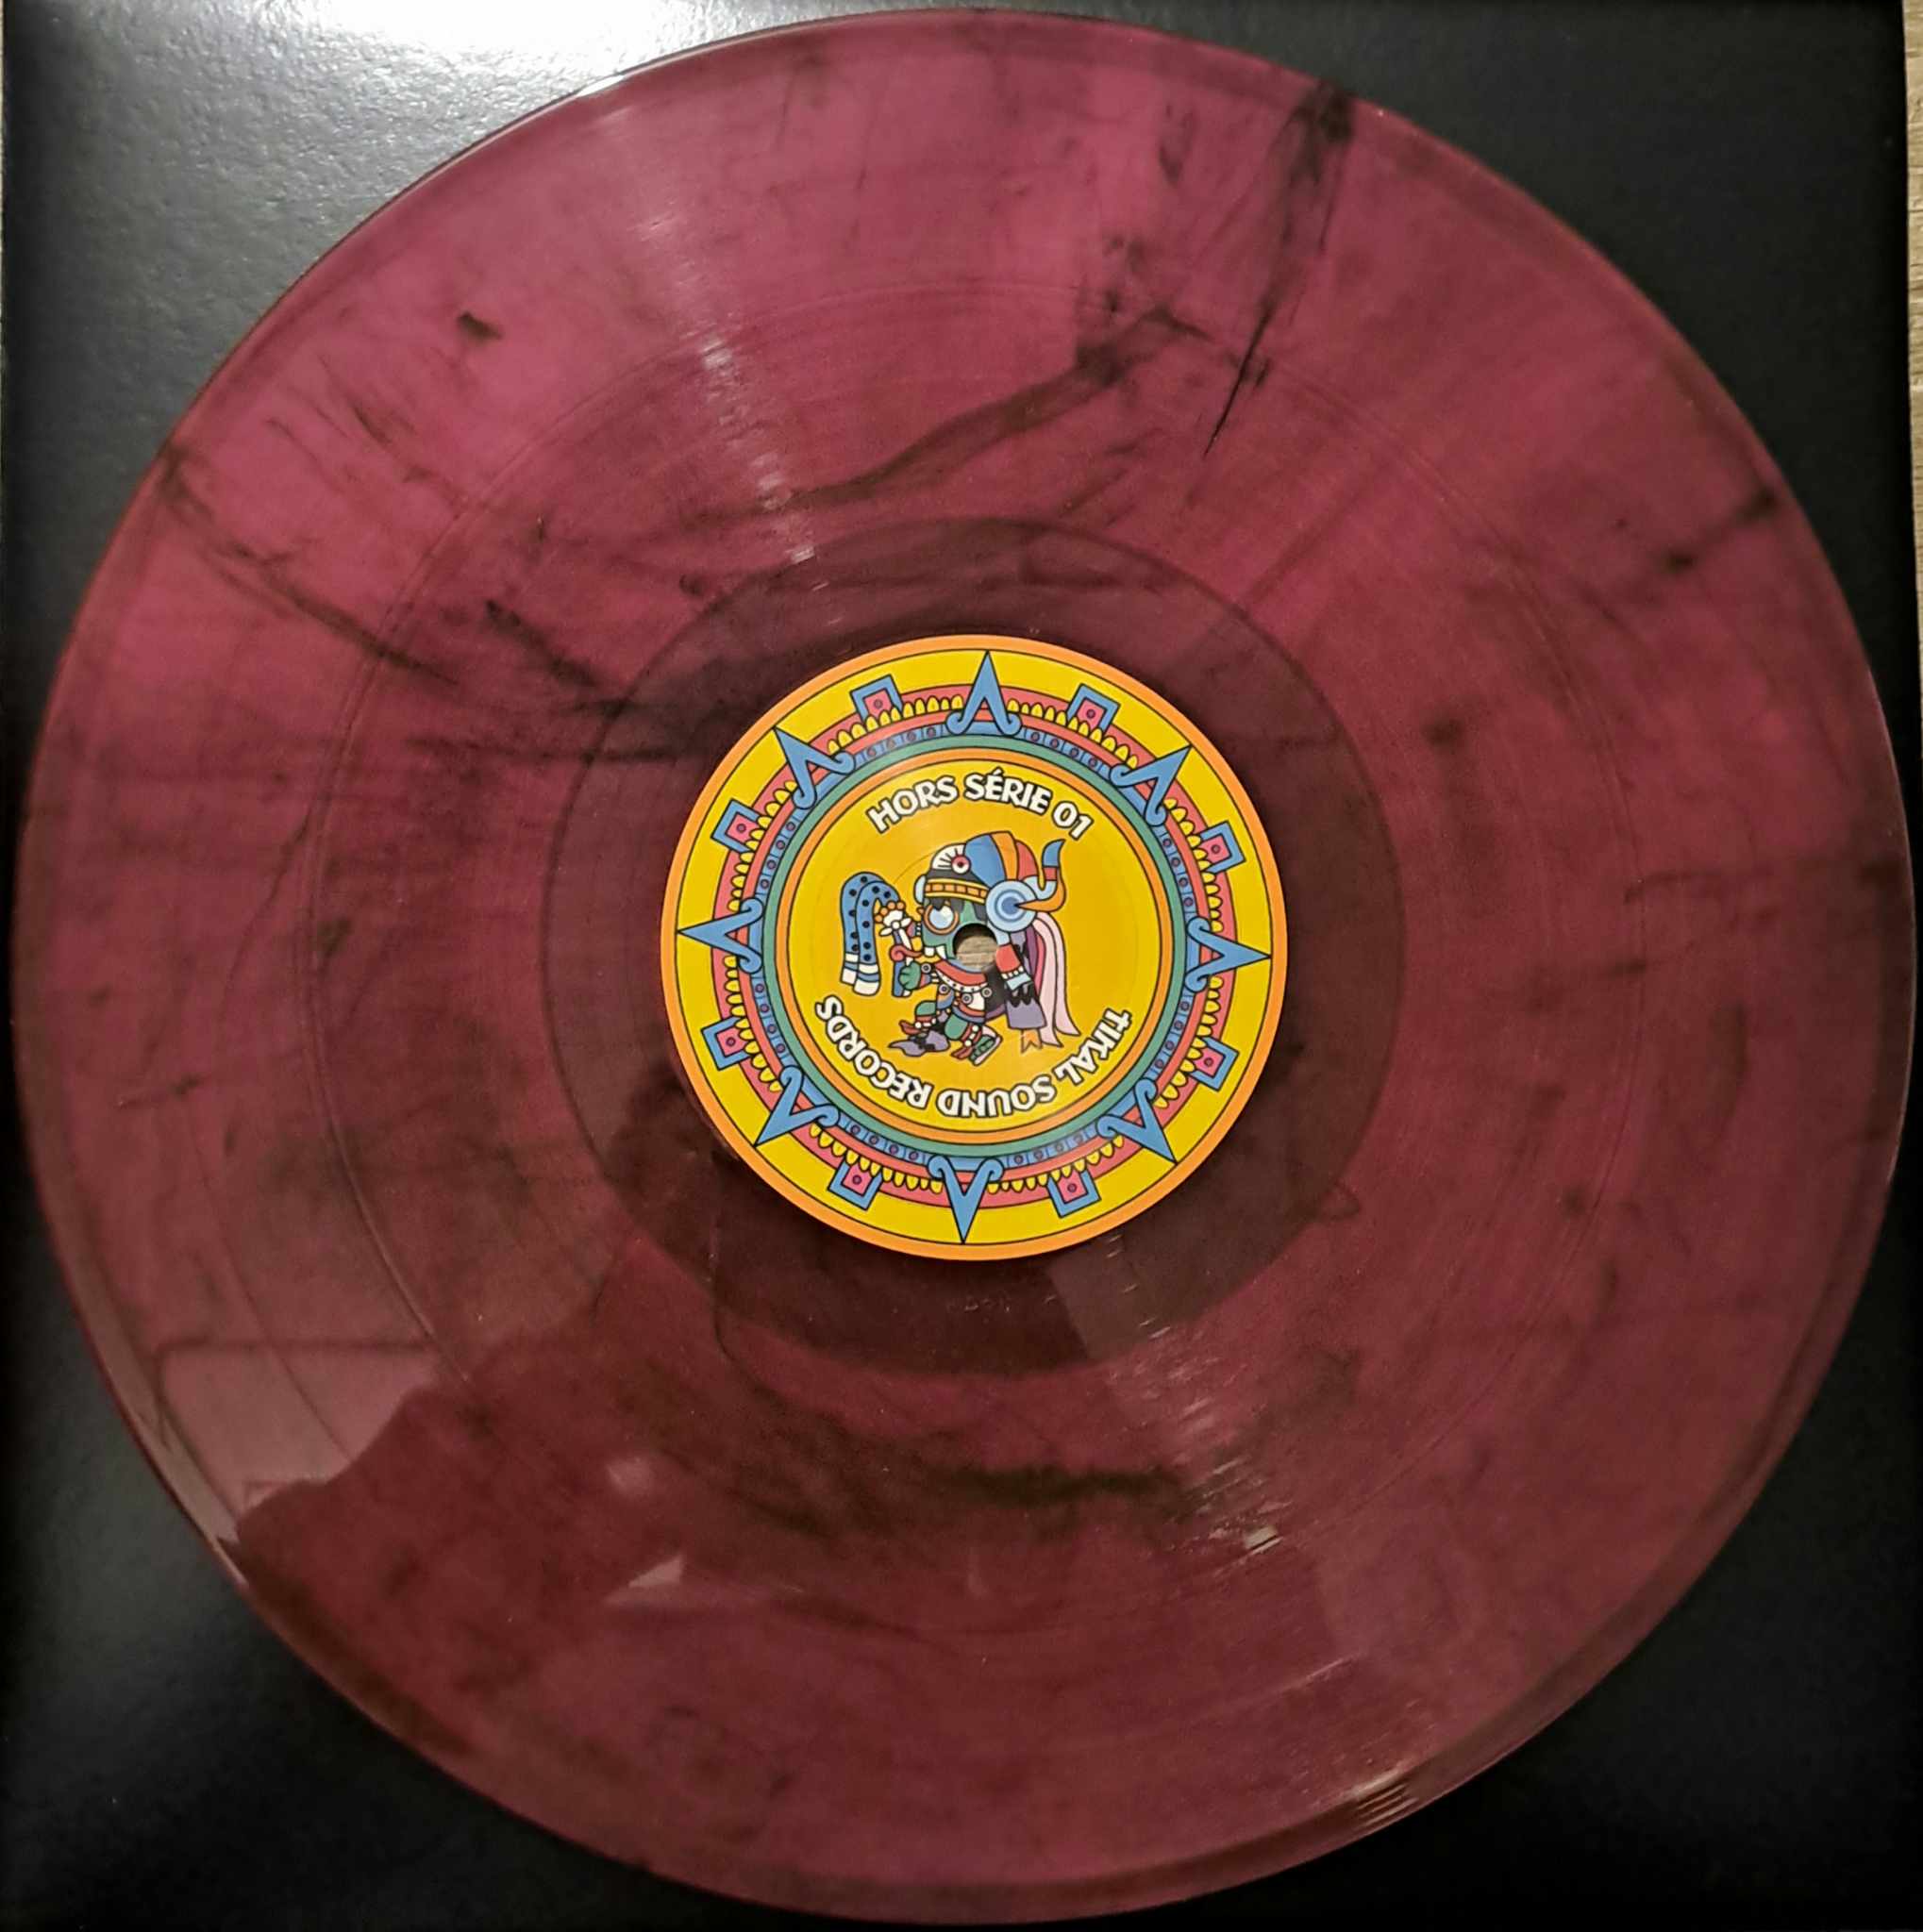 Tikal HS 01 - vinyle freetekno